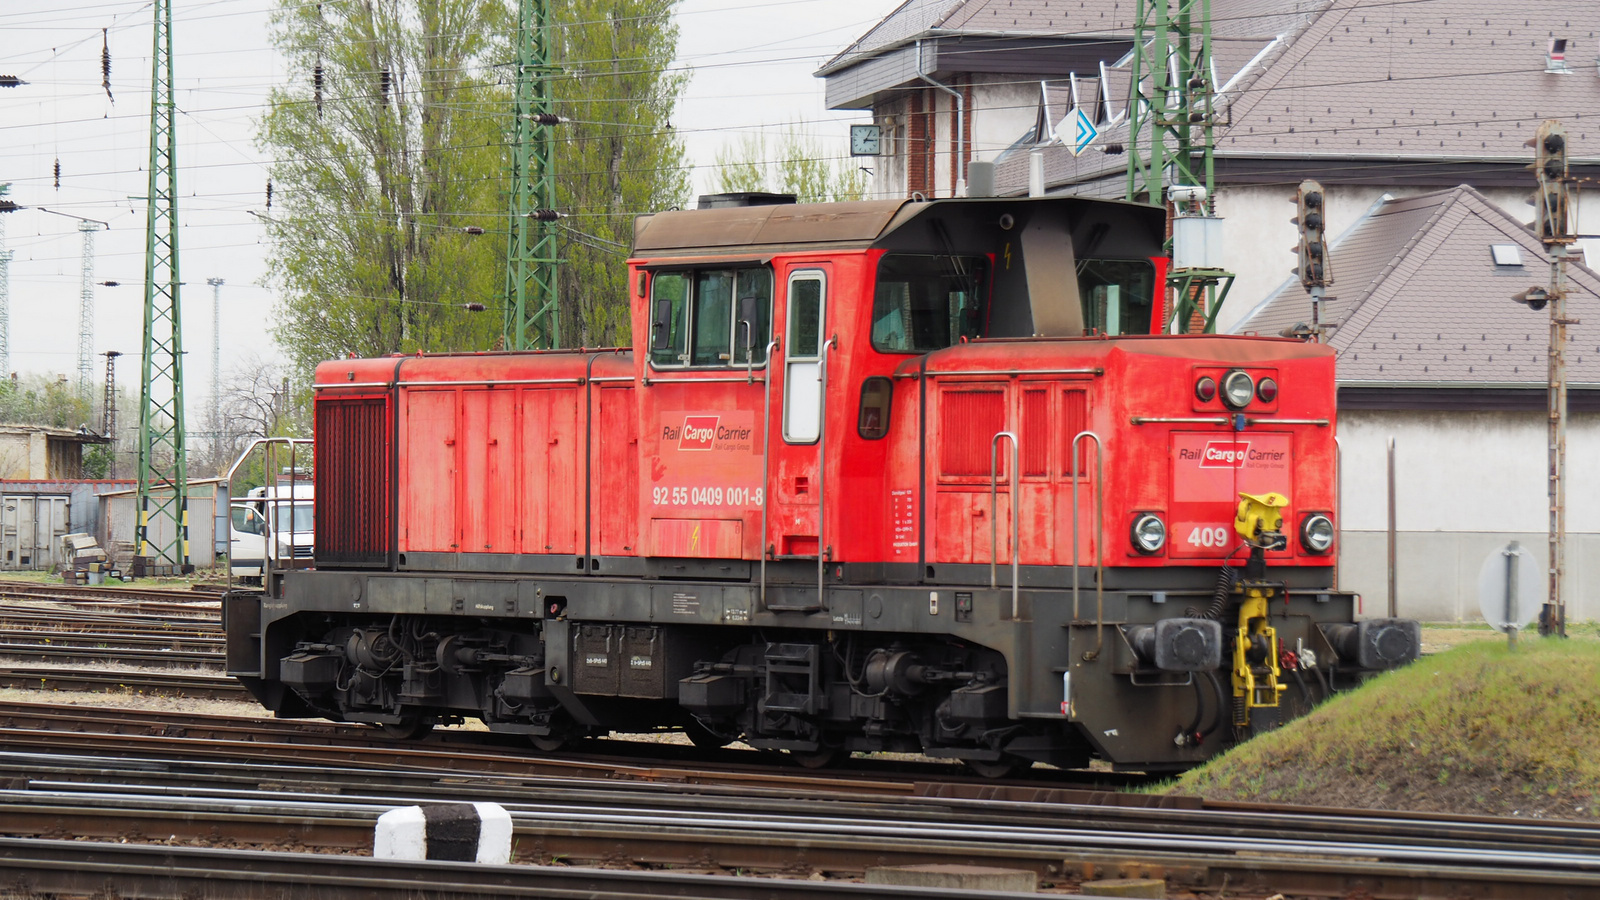 Rail Cargo Carrier 92 55 0409 001-8, SzG3